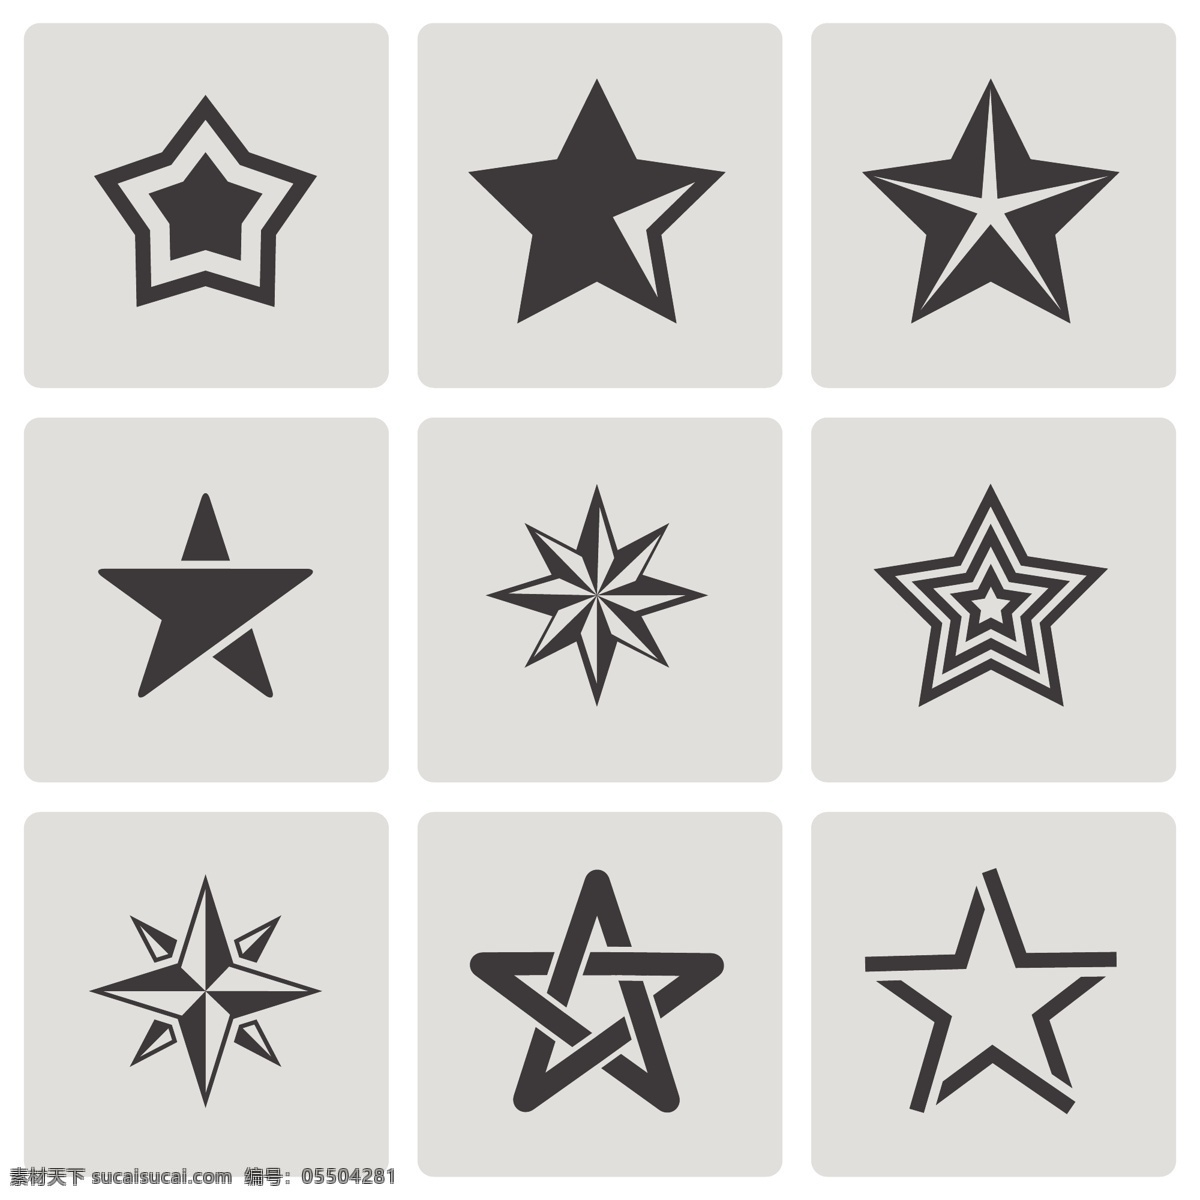 卡通 五角星 图标 矢量 模板下载 星星 标志 底纹背景 底纹边框 矢量素材 白色